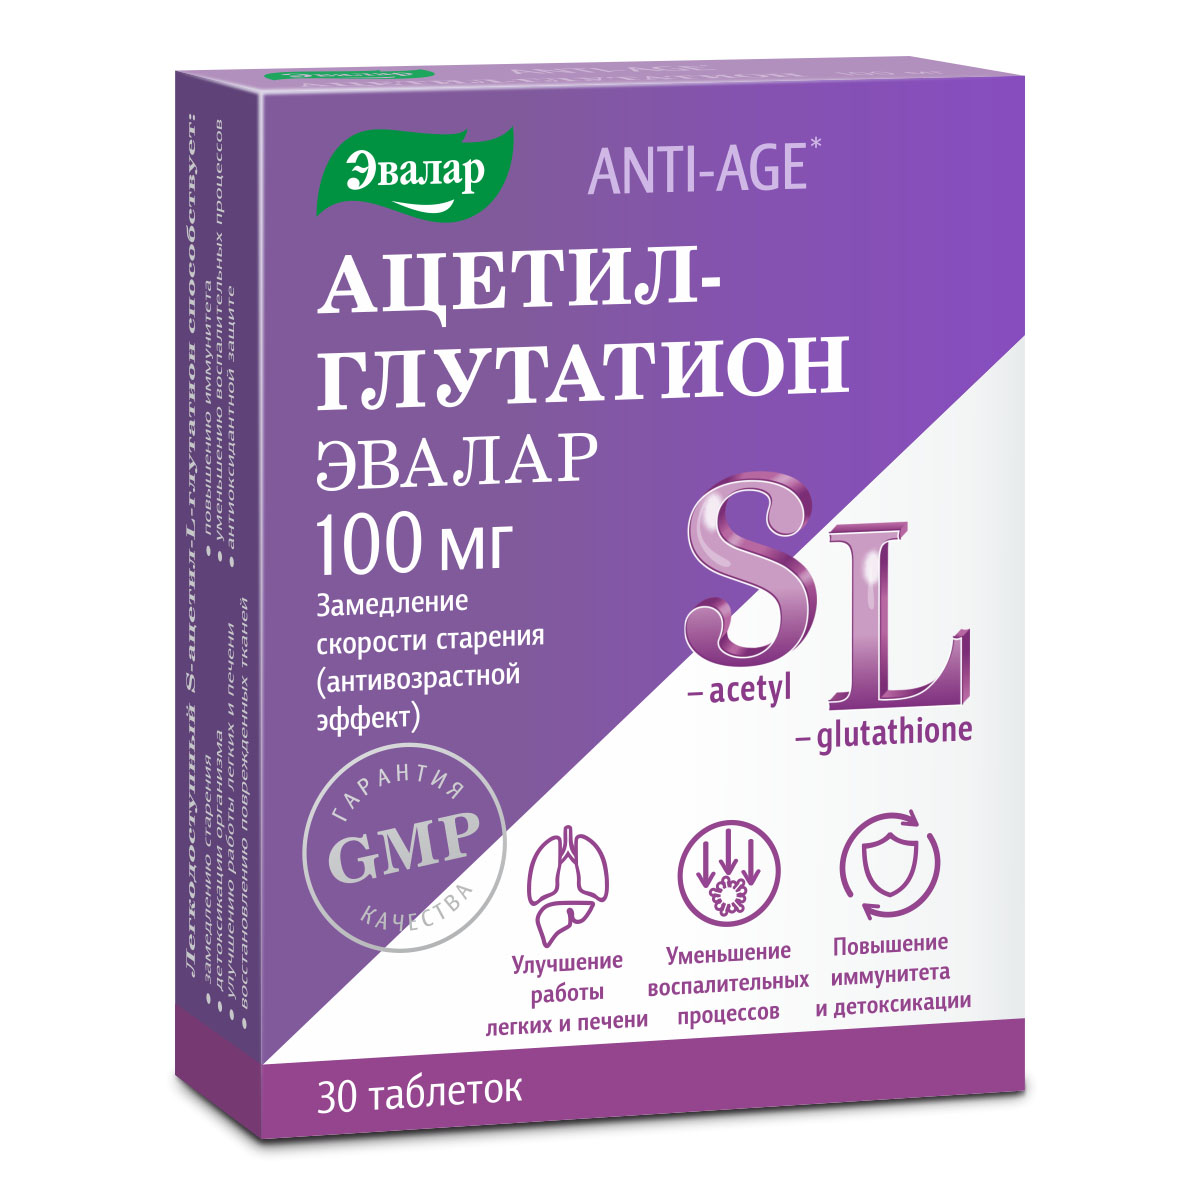 Купить Ацетил-глутатион для замедления скорости старения, 100 мг, 30 таблеток, Эвалар